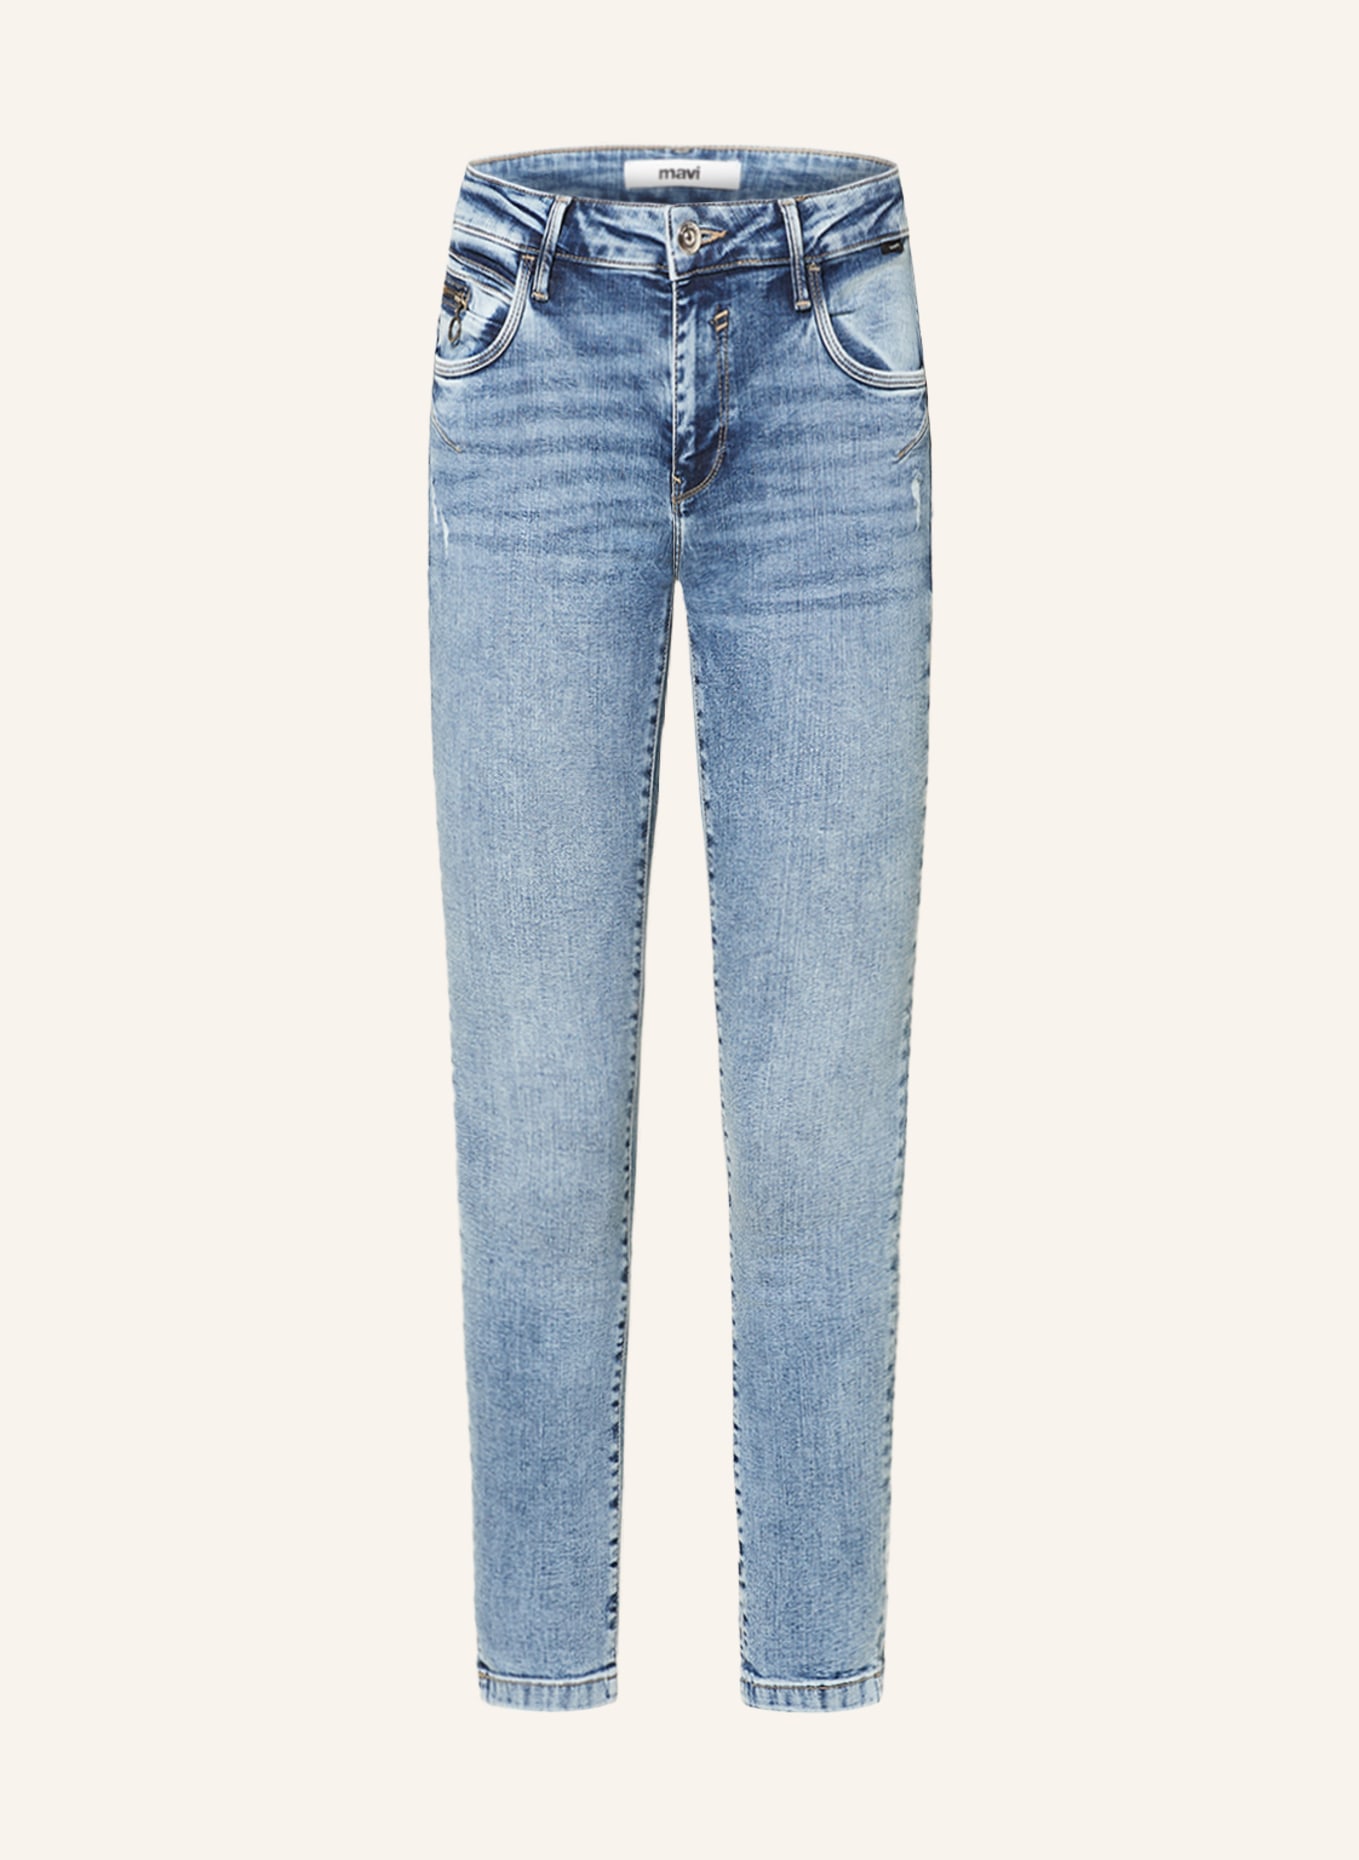 mavi Skinny Jeans ADRIANA, Farbe: 84991 lt ripped shaded glam (Bild 1)